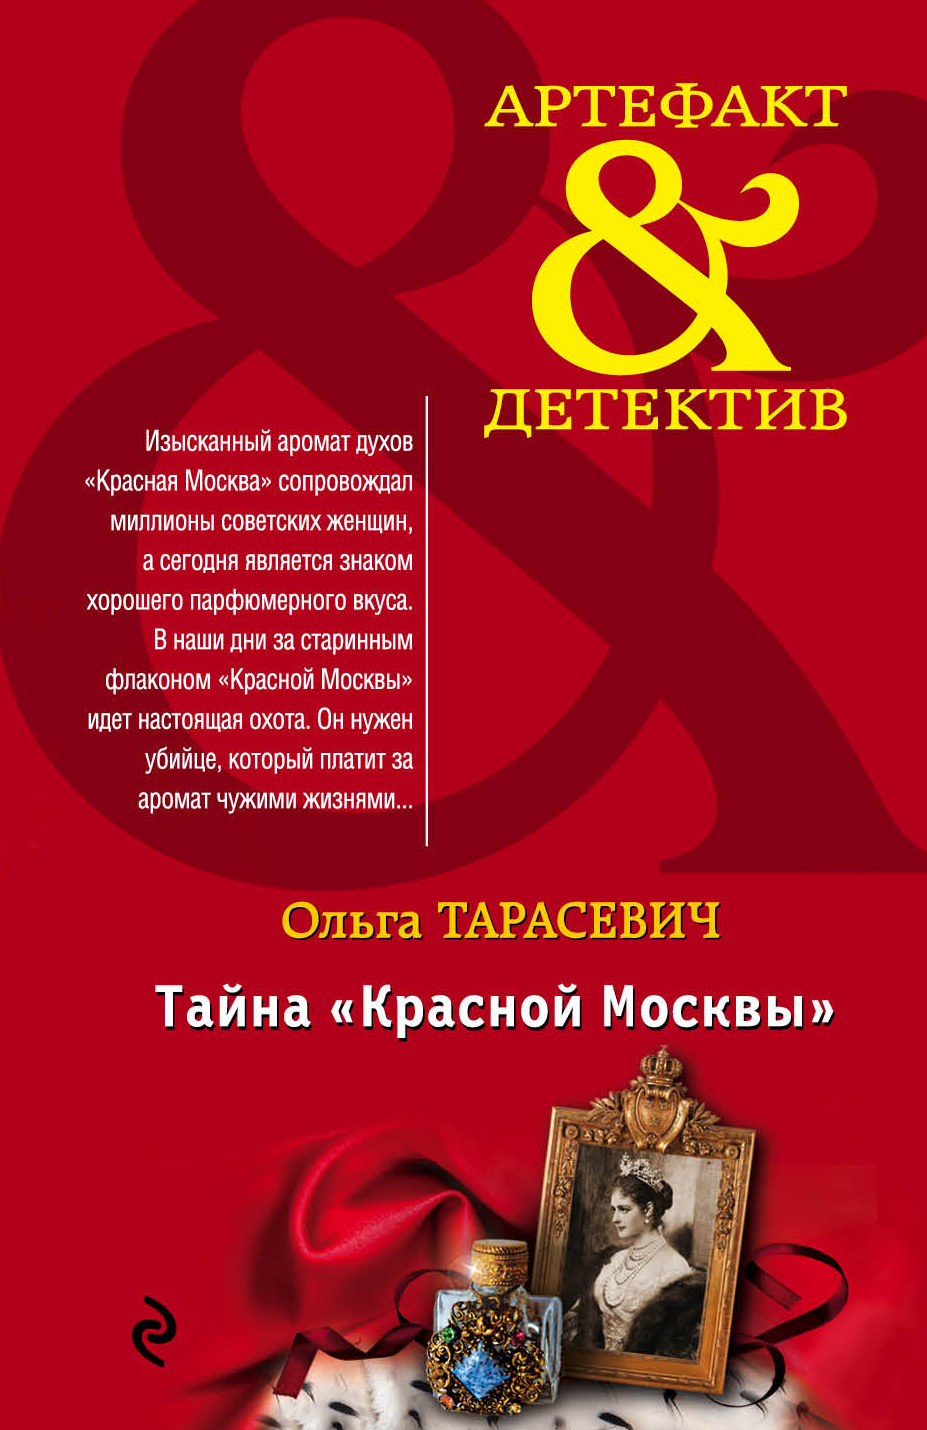 Тайна «Красной Москвы» читать онлайн